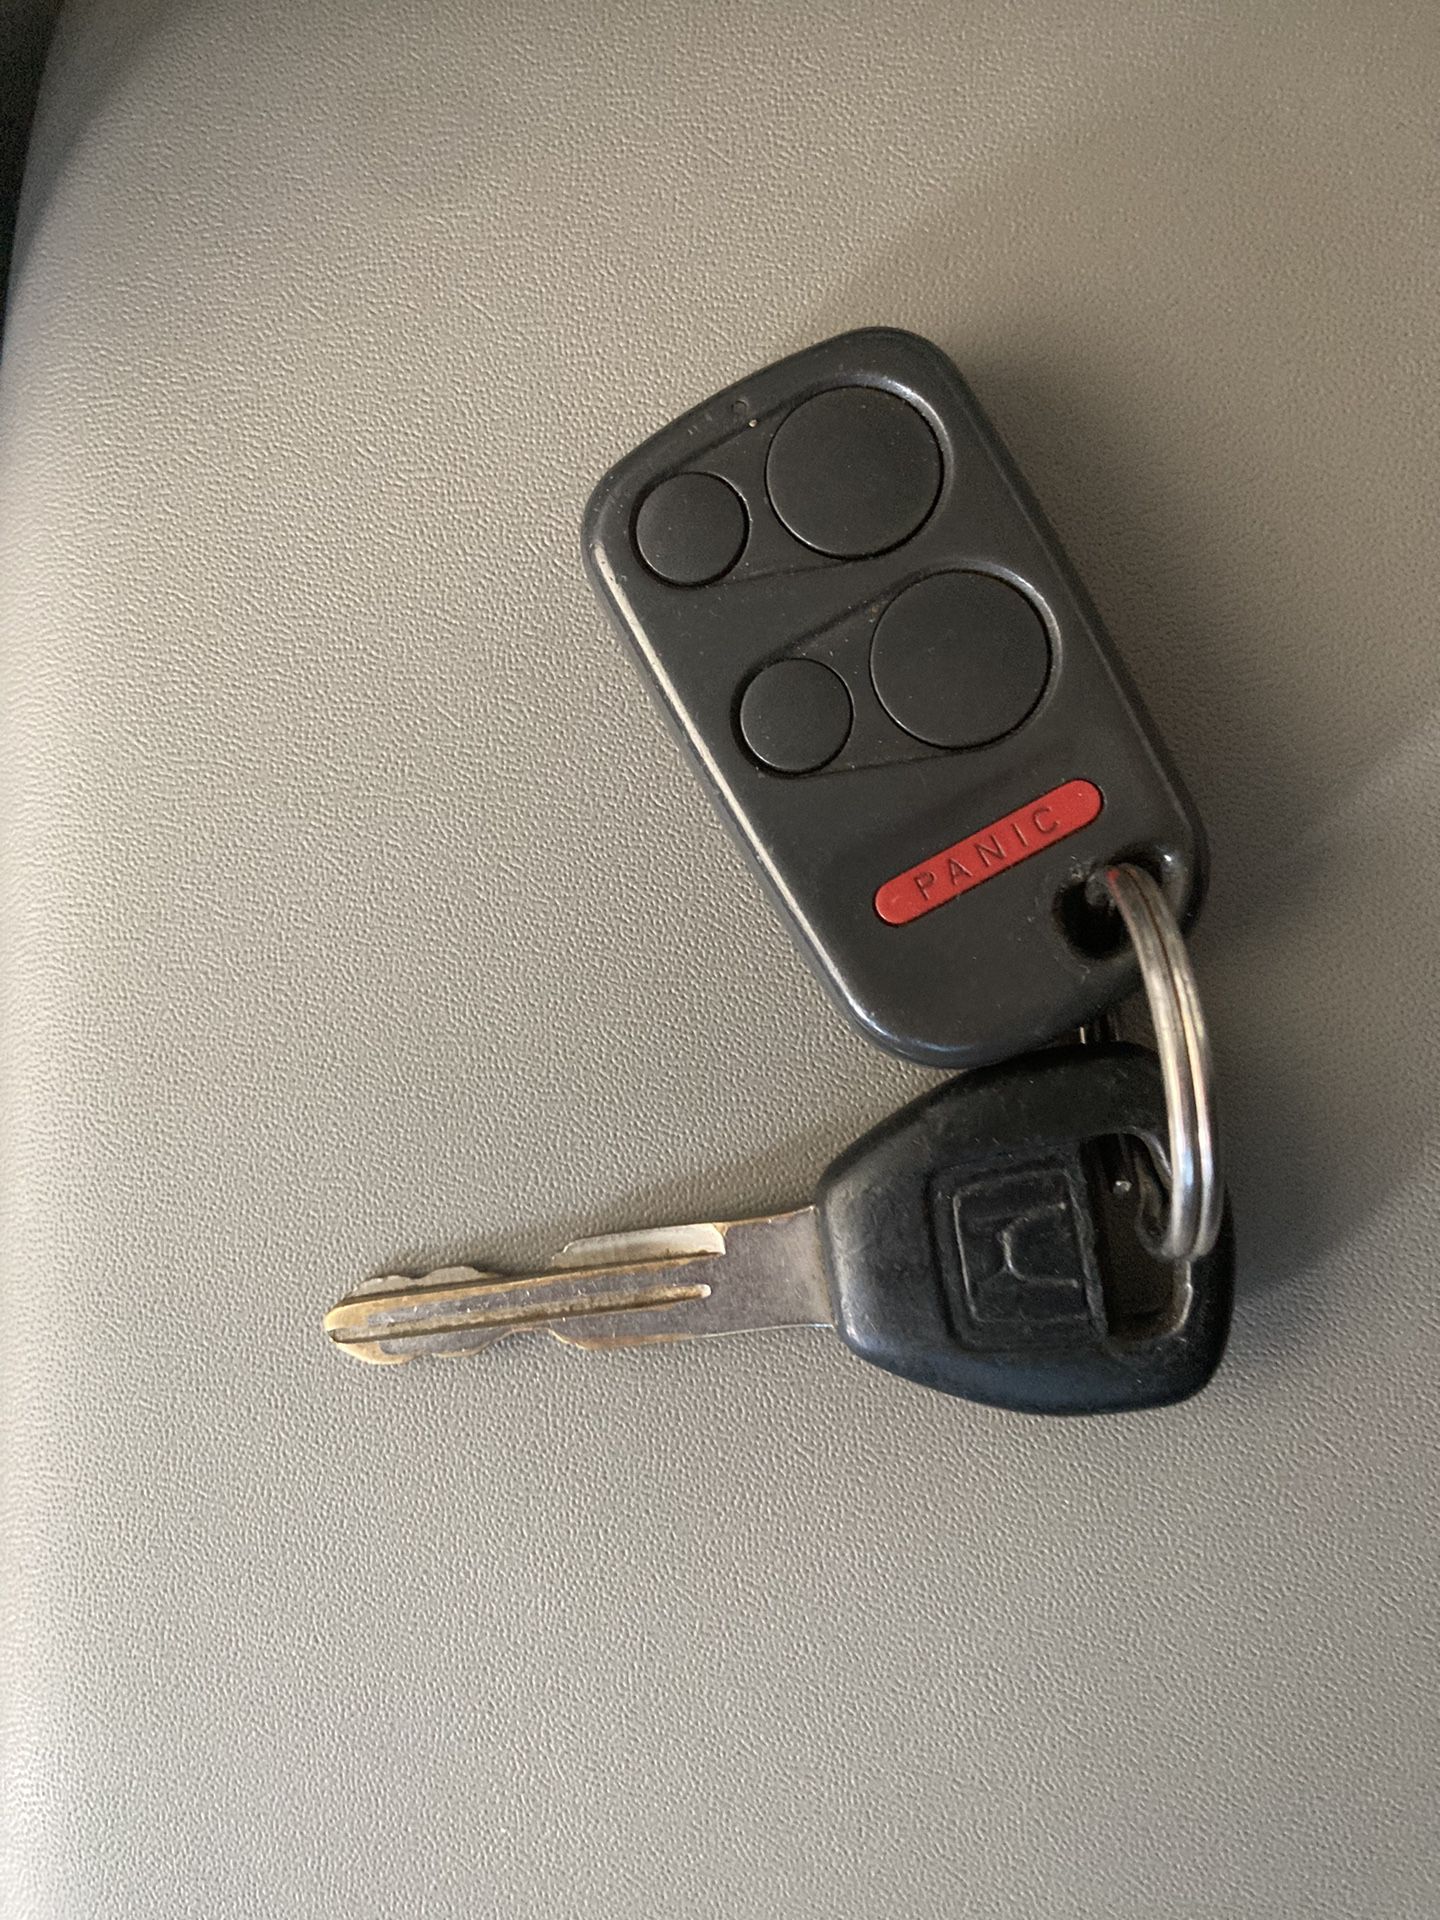 Honda Odyssey Key Fob 